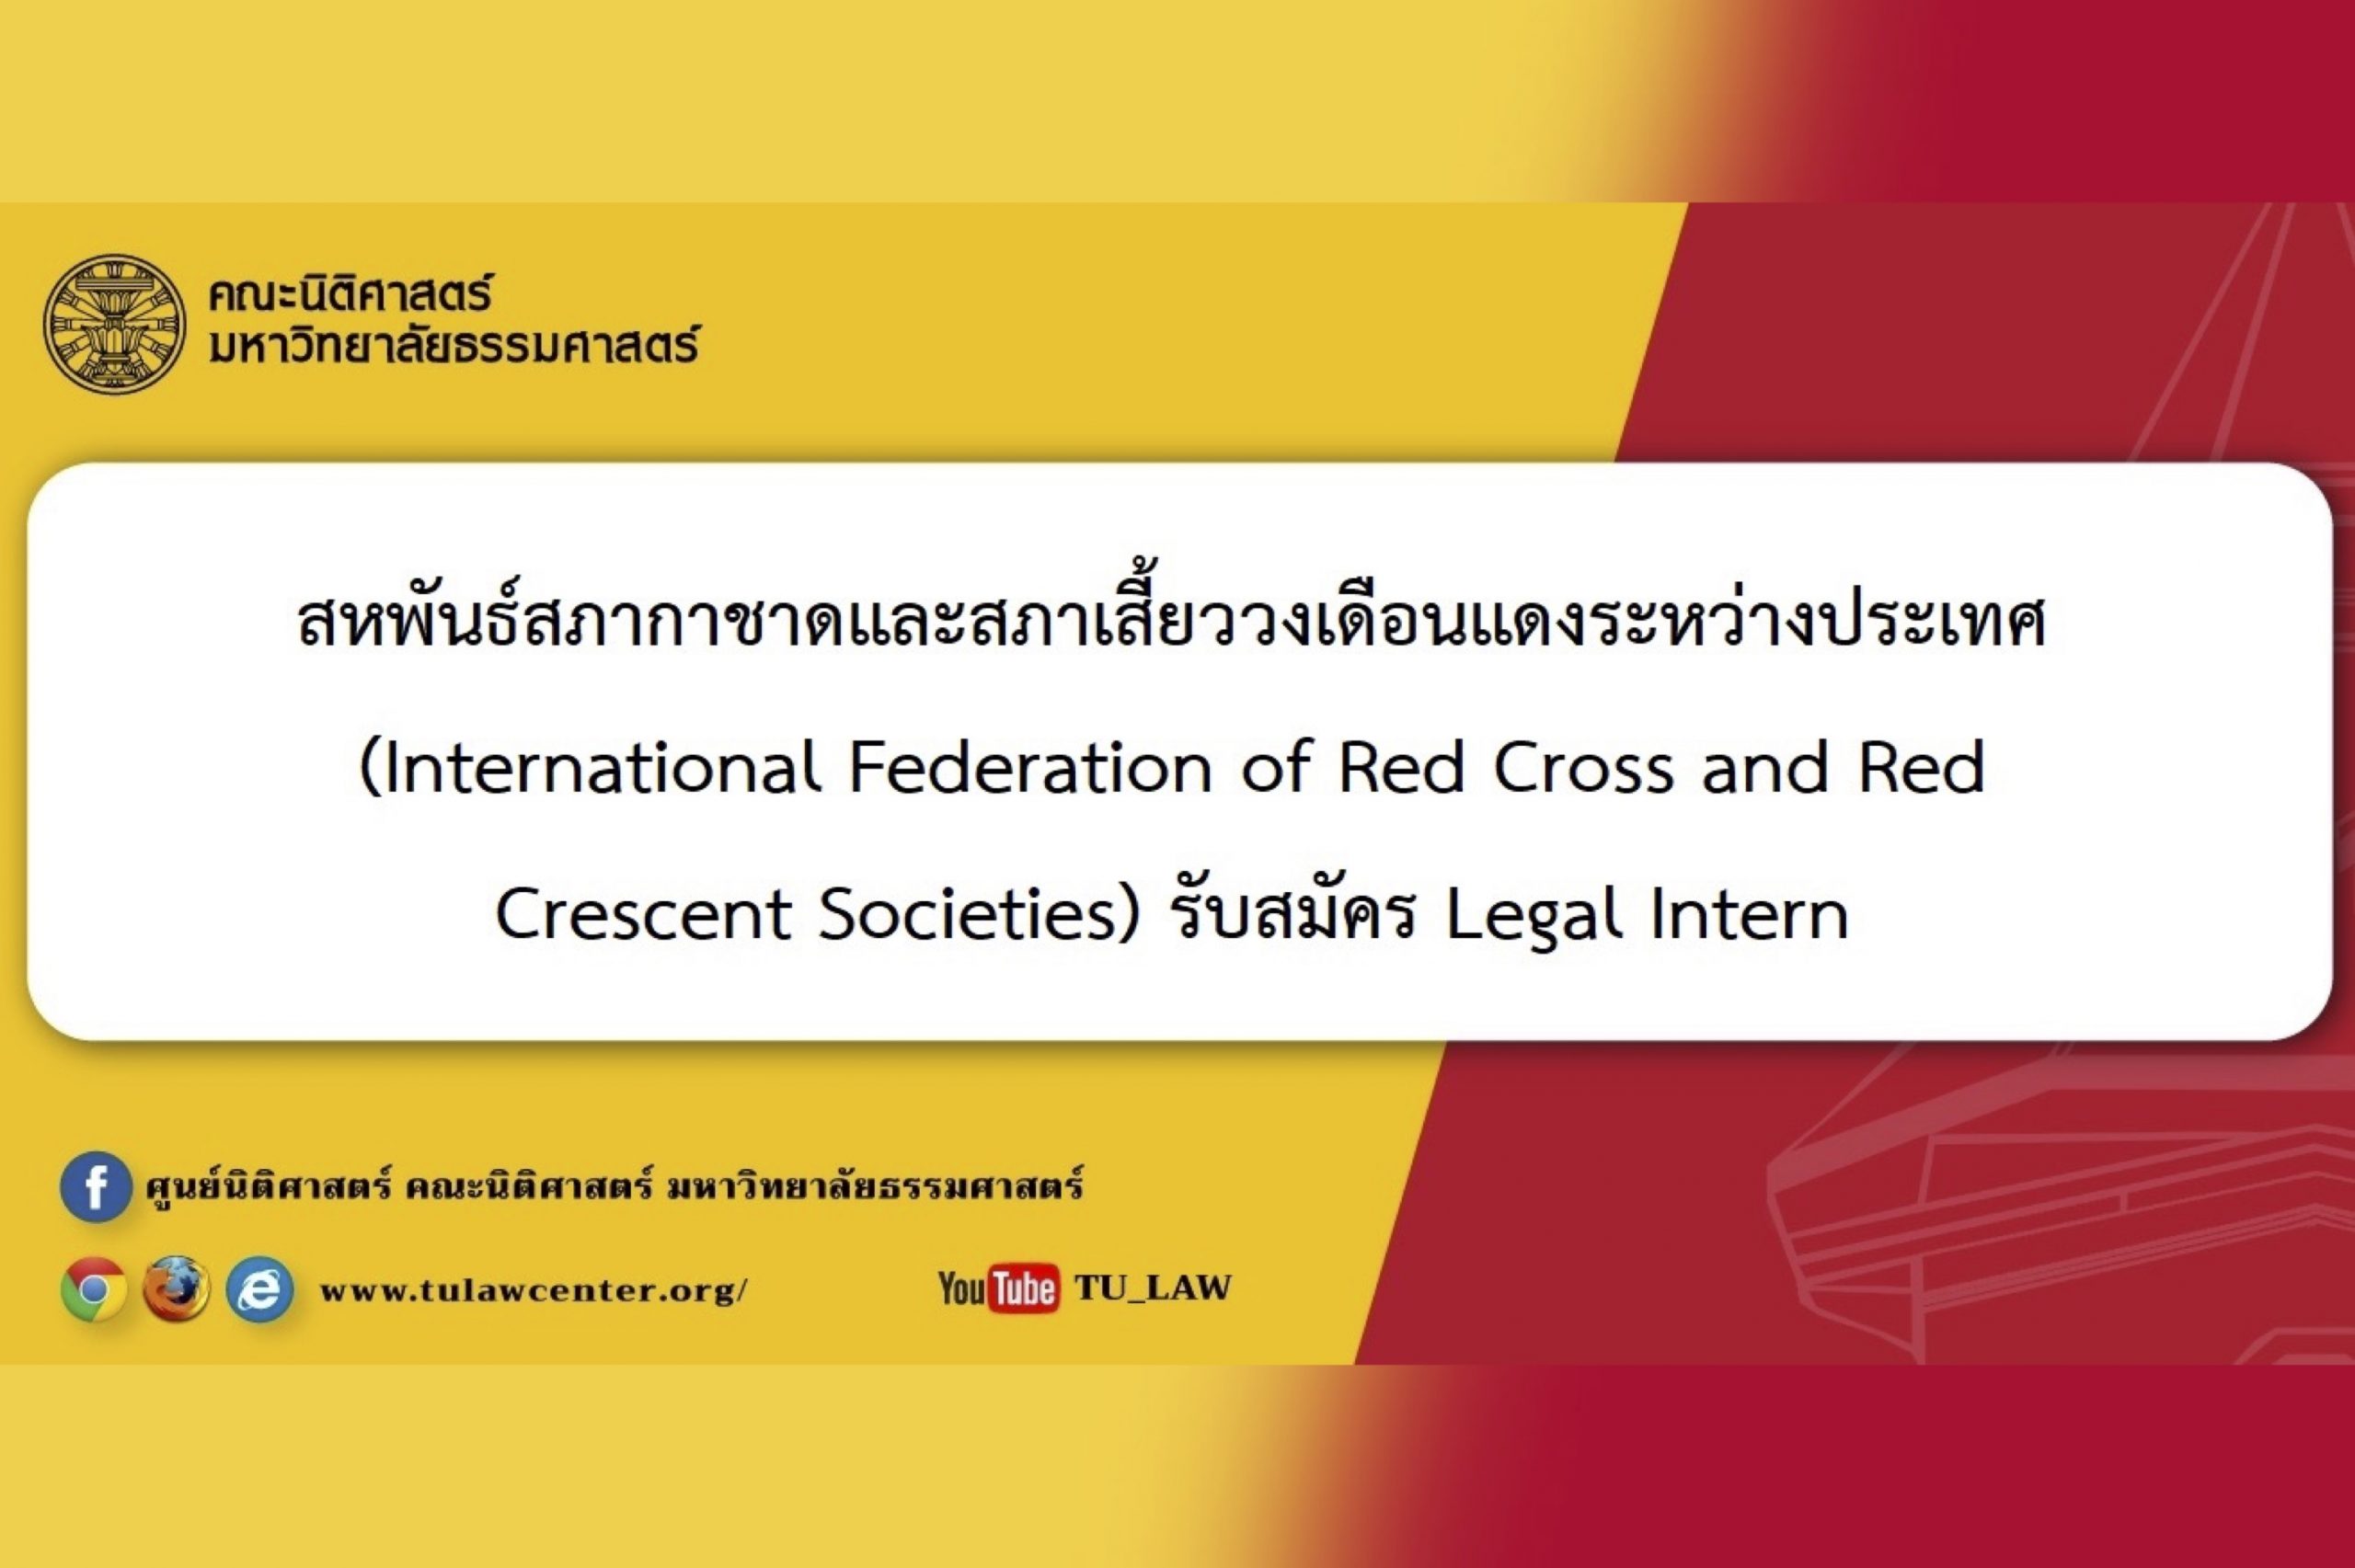 สหพันธ์สภากาชาดและสภาเสี้ยววงเดือนแดงระหว่างประเทศ (International Federation of Red Cross and Red Crescent Societies) รับสมัคร Legal Intern